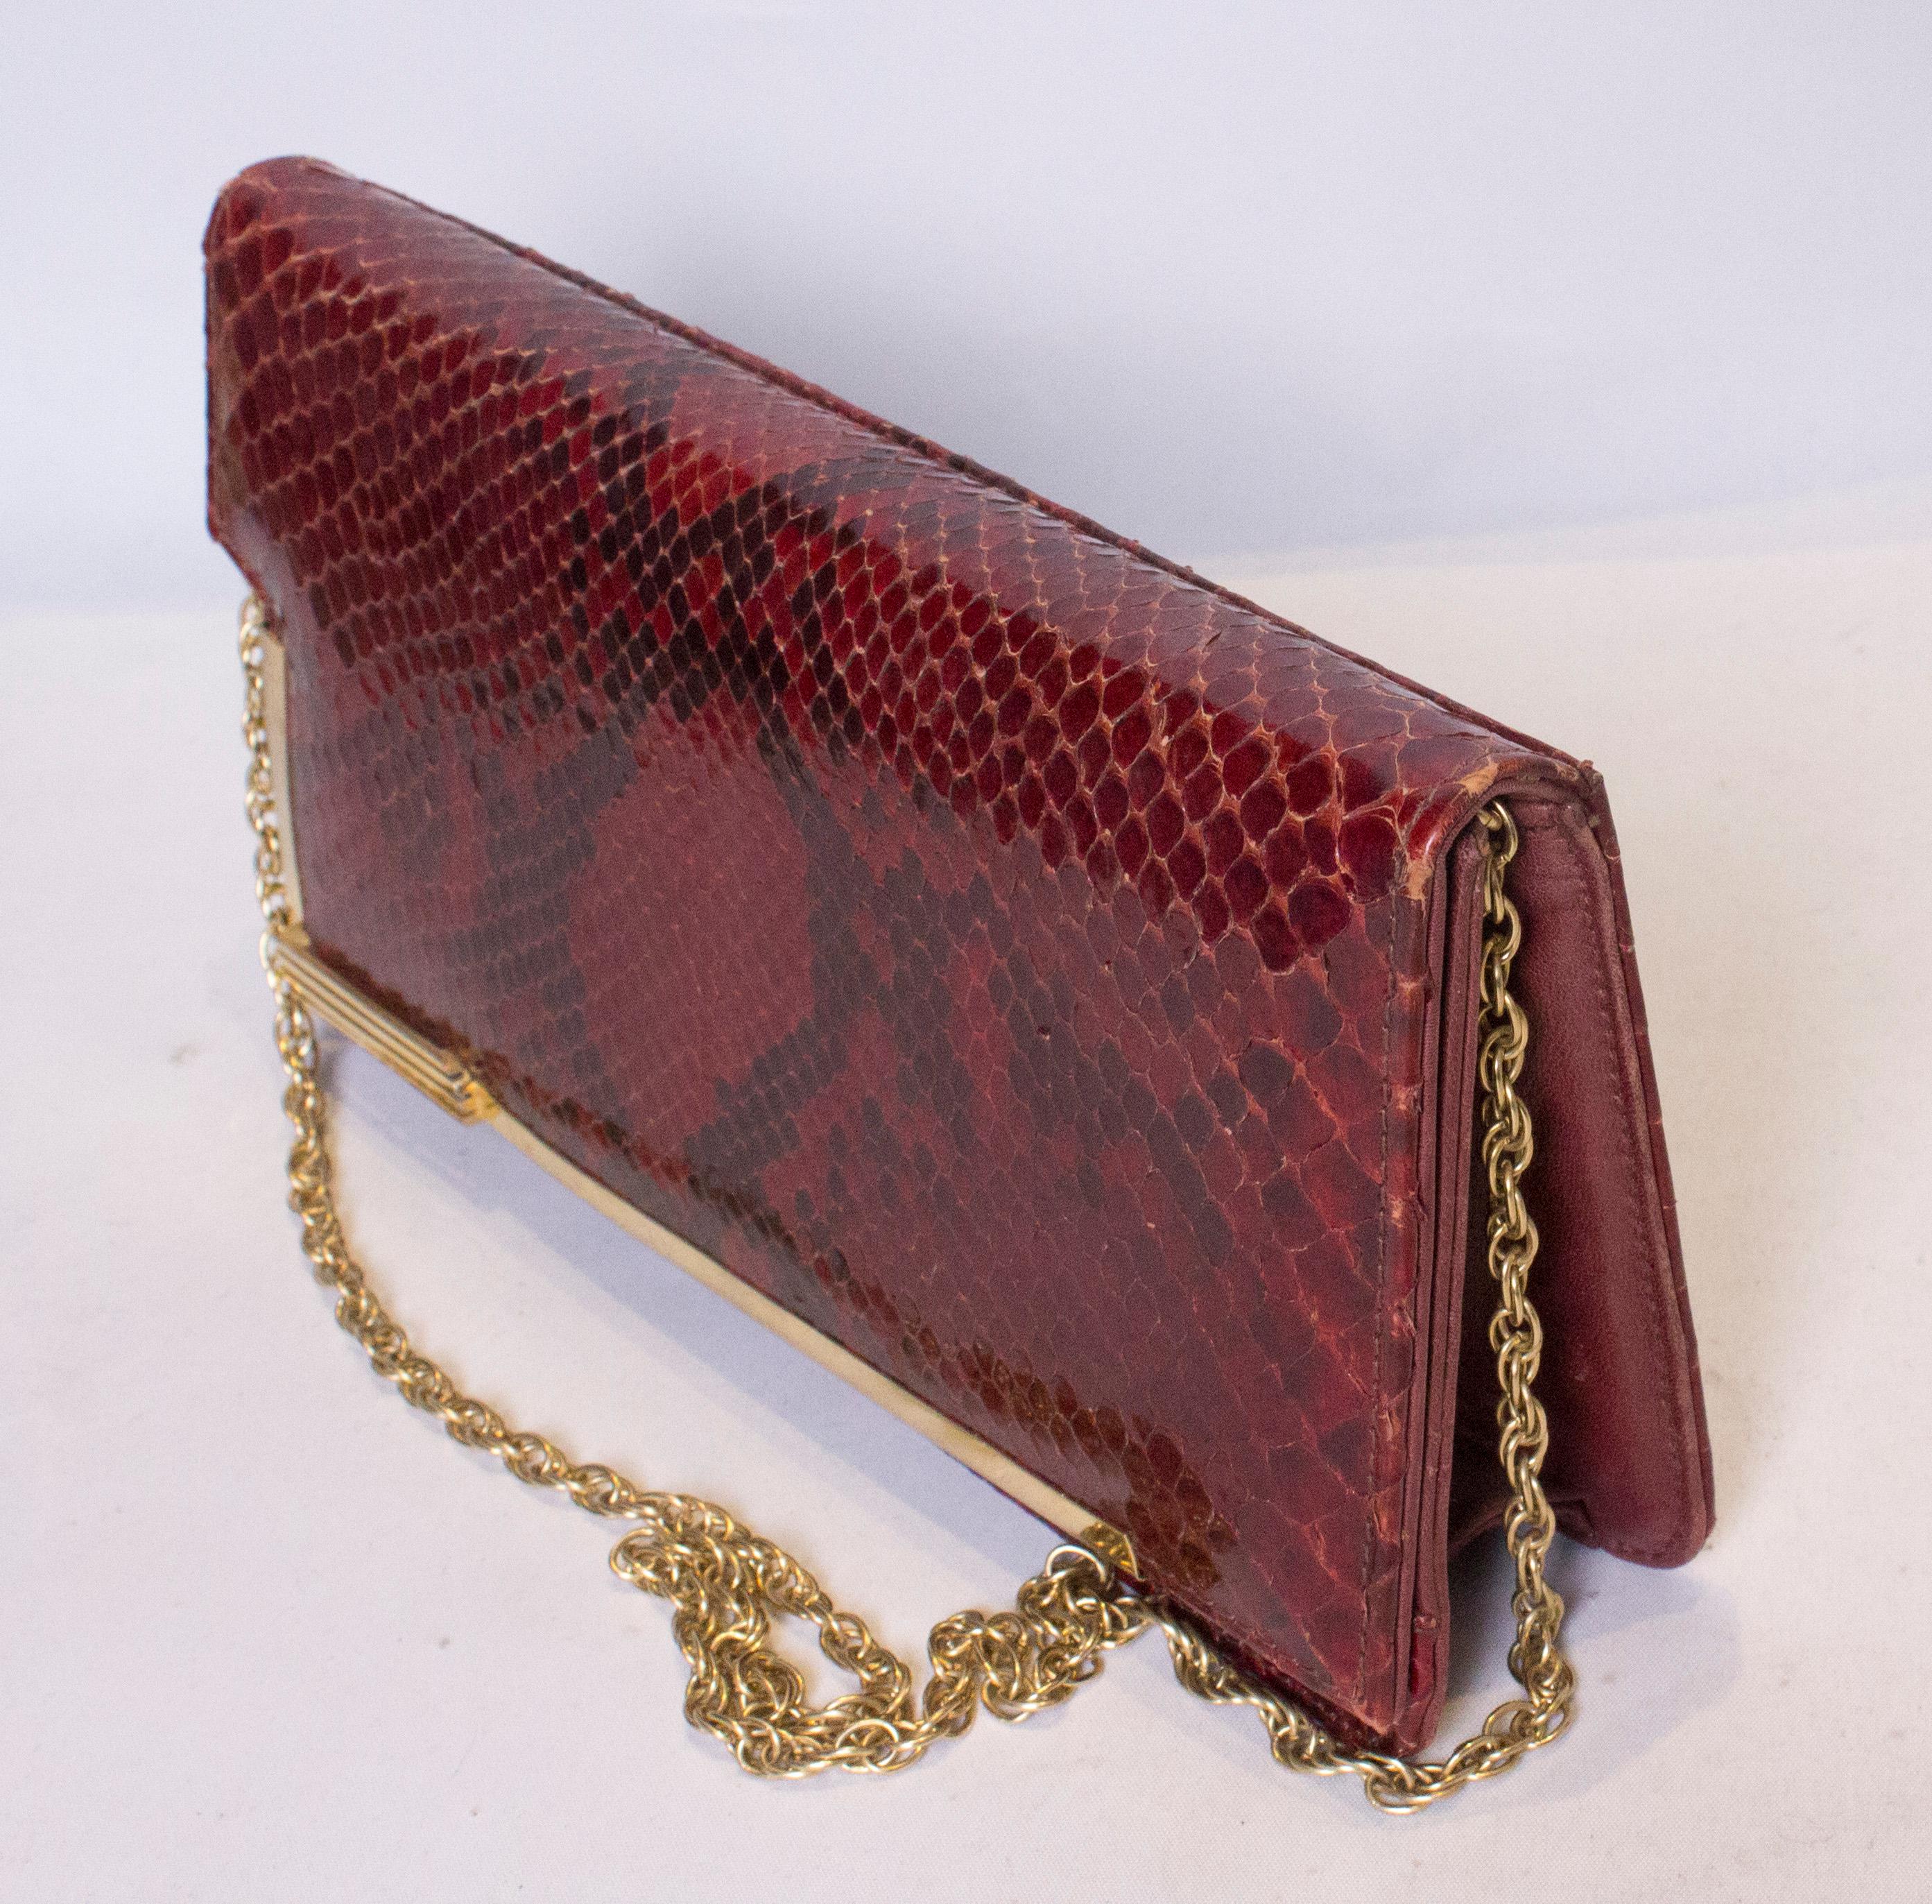 Un sac à main vintage chic en peau de serpent avec une garniture dorée et une poignée en chaîne.  Le sac se ferme à l'aide d'une fermeture à boutons-poussoirs et comporte une poche zippée à l'intérieur.
Mesures : largeur 11'', hauteur 6'',